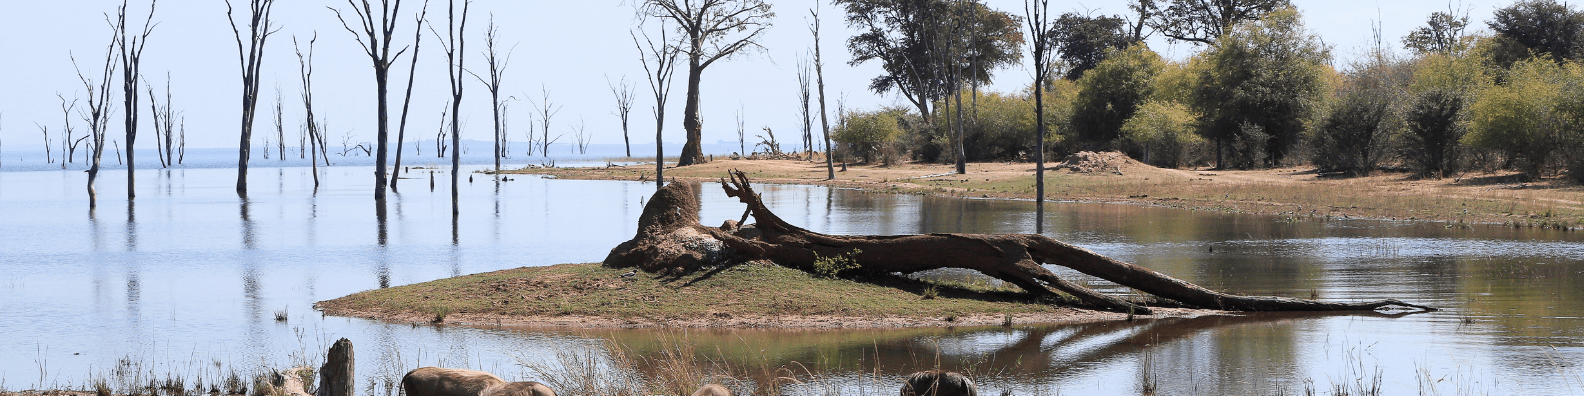 Lake Kariba Zimbabwe Panoramic View Travel